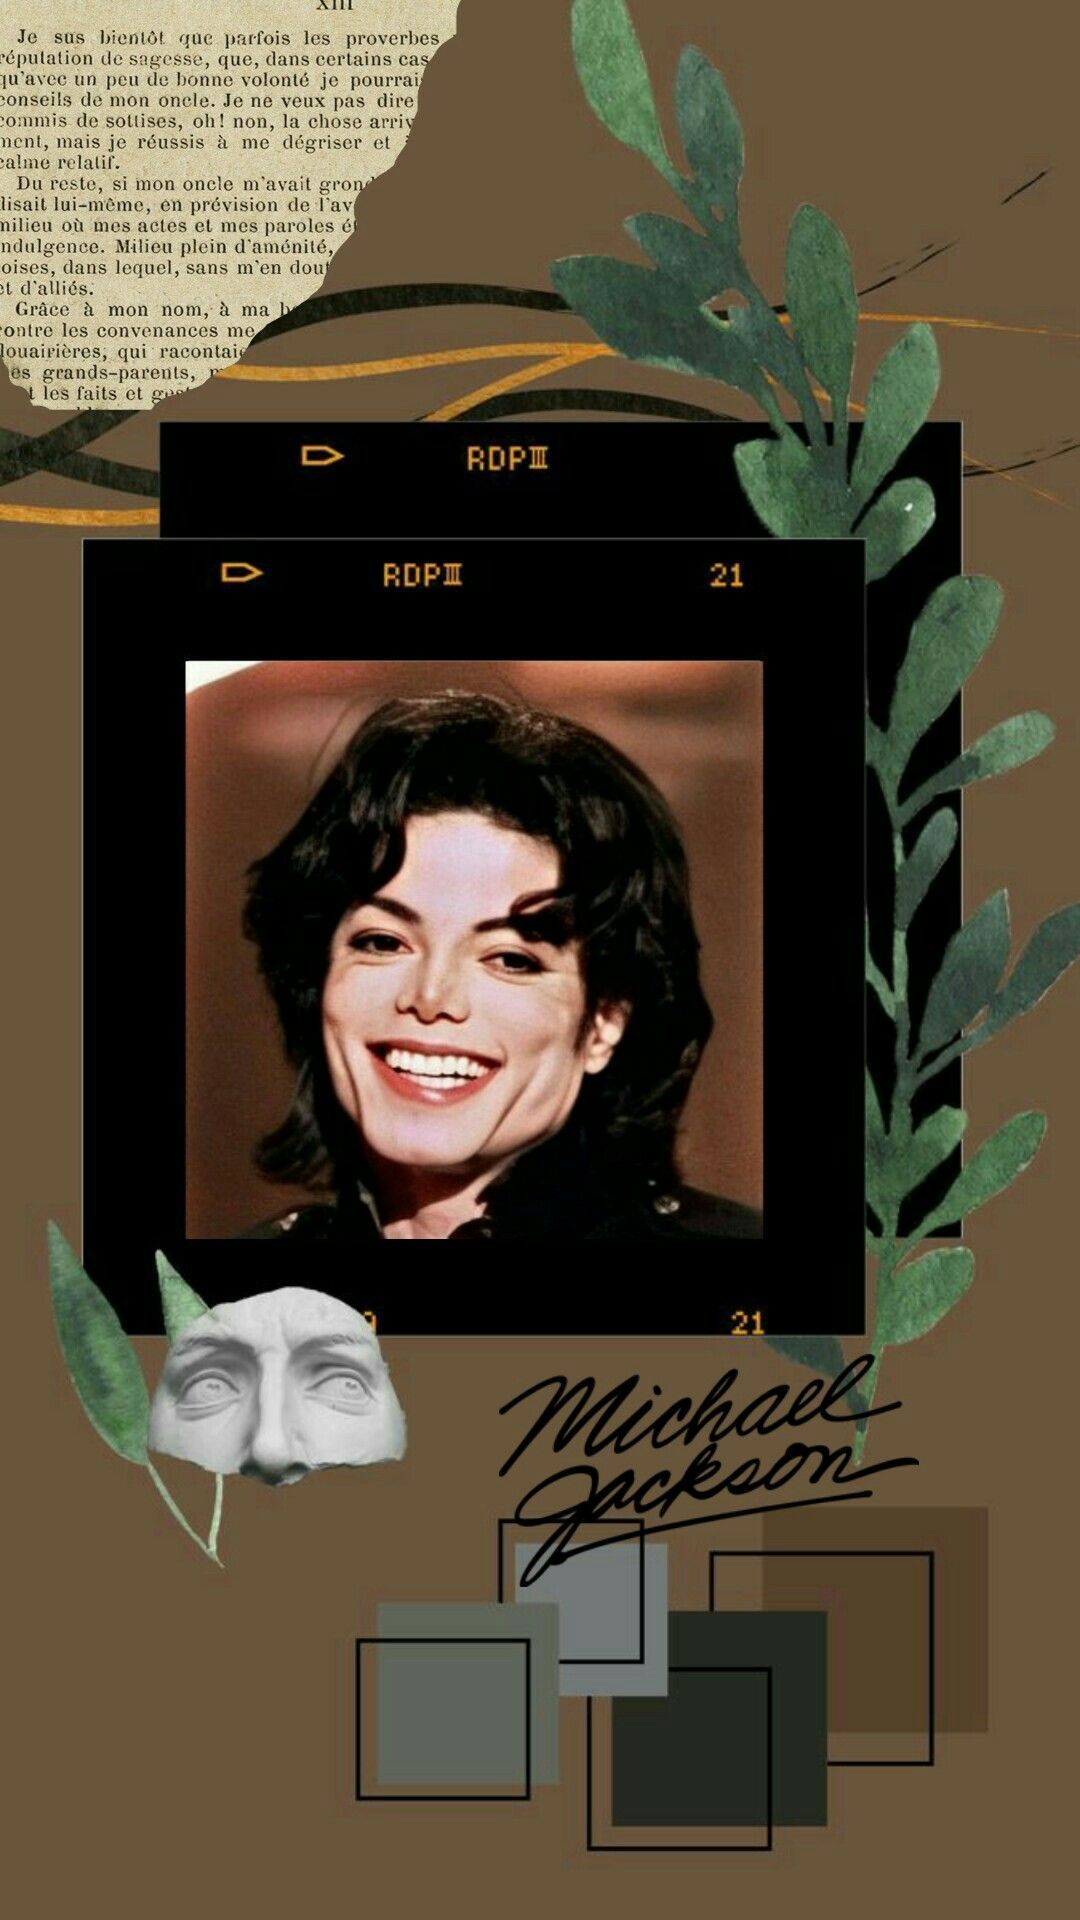 Michael Jackson Aesthetic Wallpaper. Colagem de foto na parede, Michael jeckson, Michael jackson